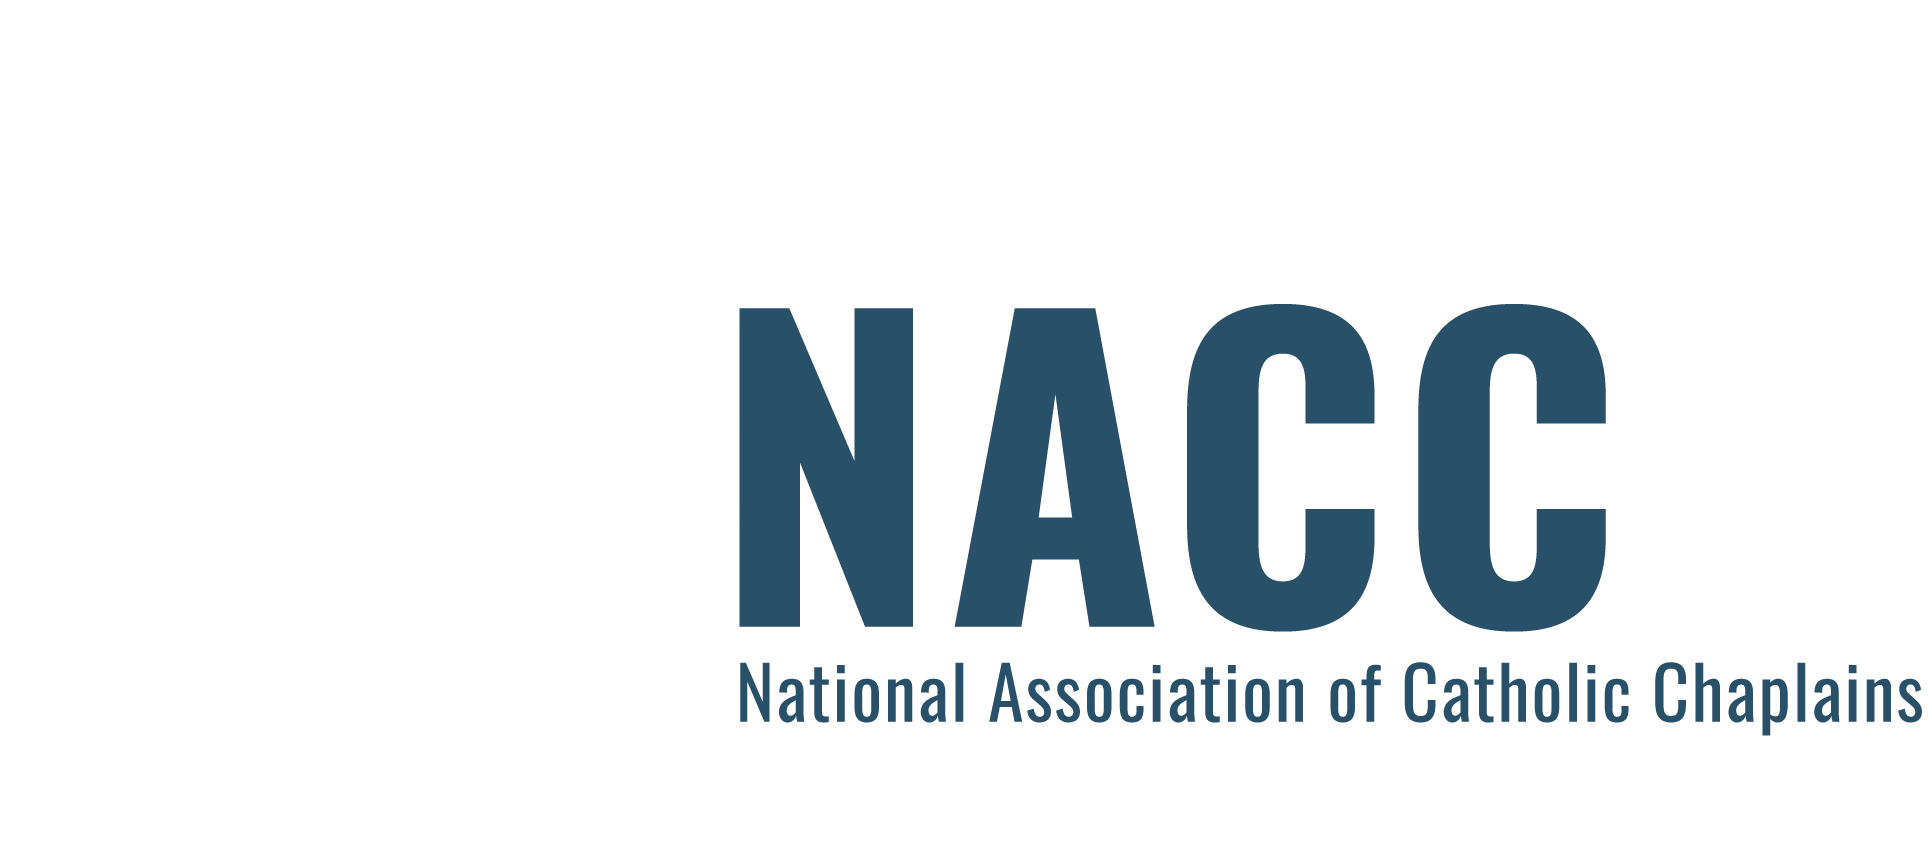 National Association of Catholic Chaplains logo